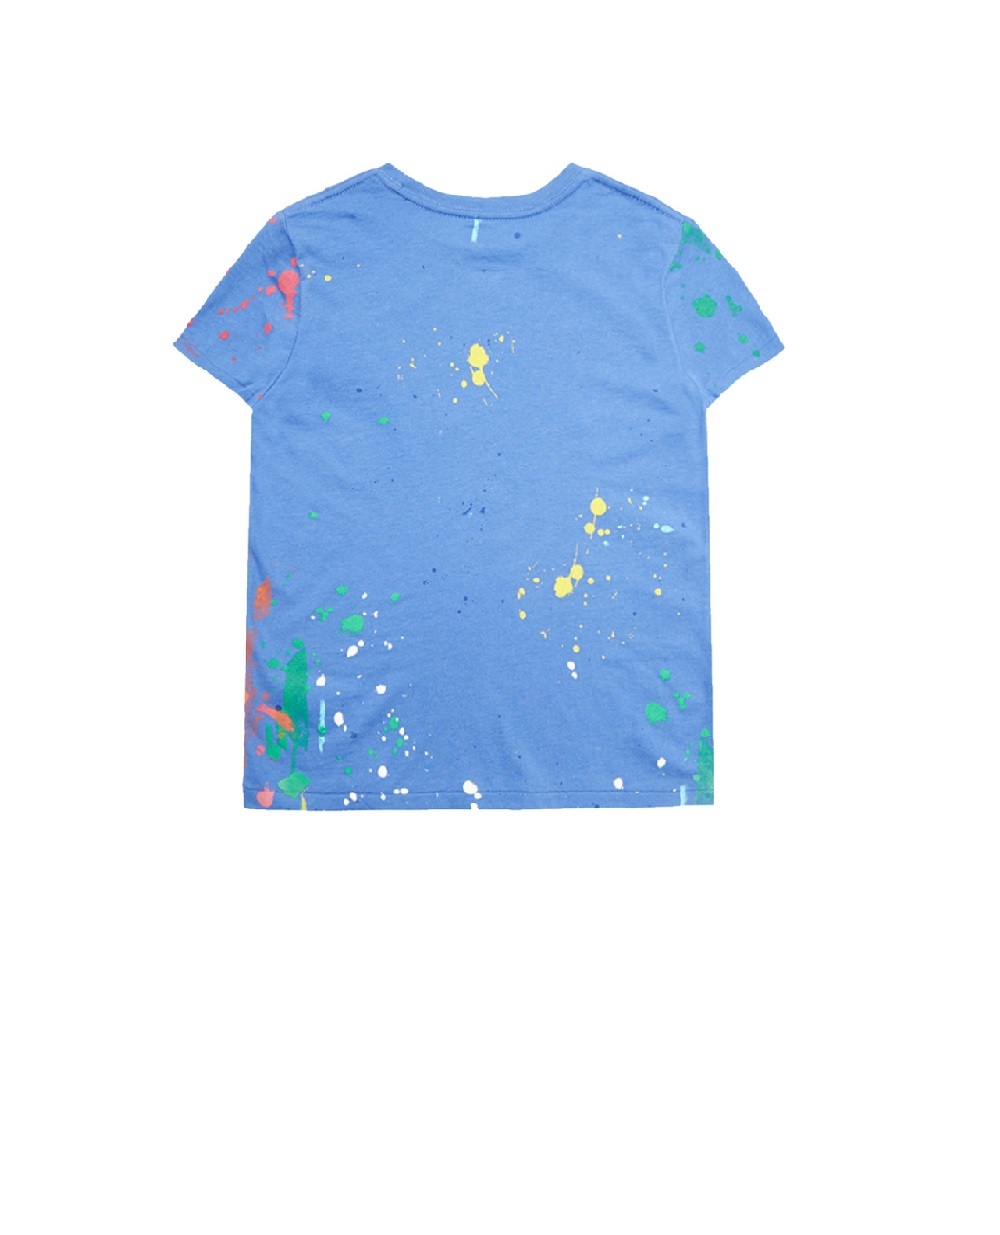 Детская футболка Polo Bear Polo Ralph Lauren Kids 311868484002, синий цвет • Купить в интернет-магазине Kameron